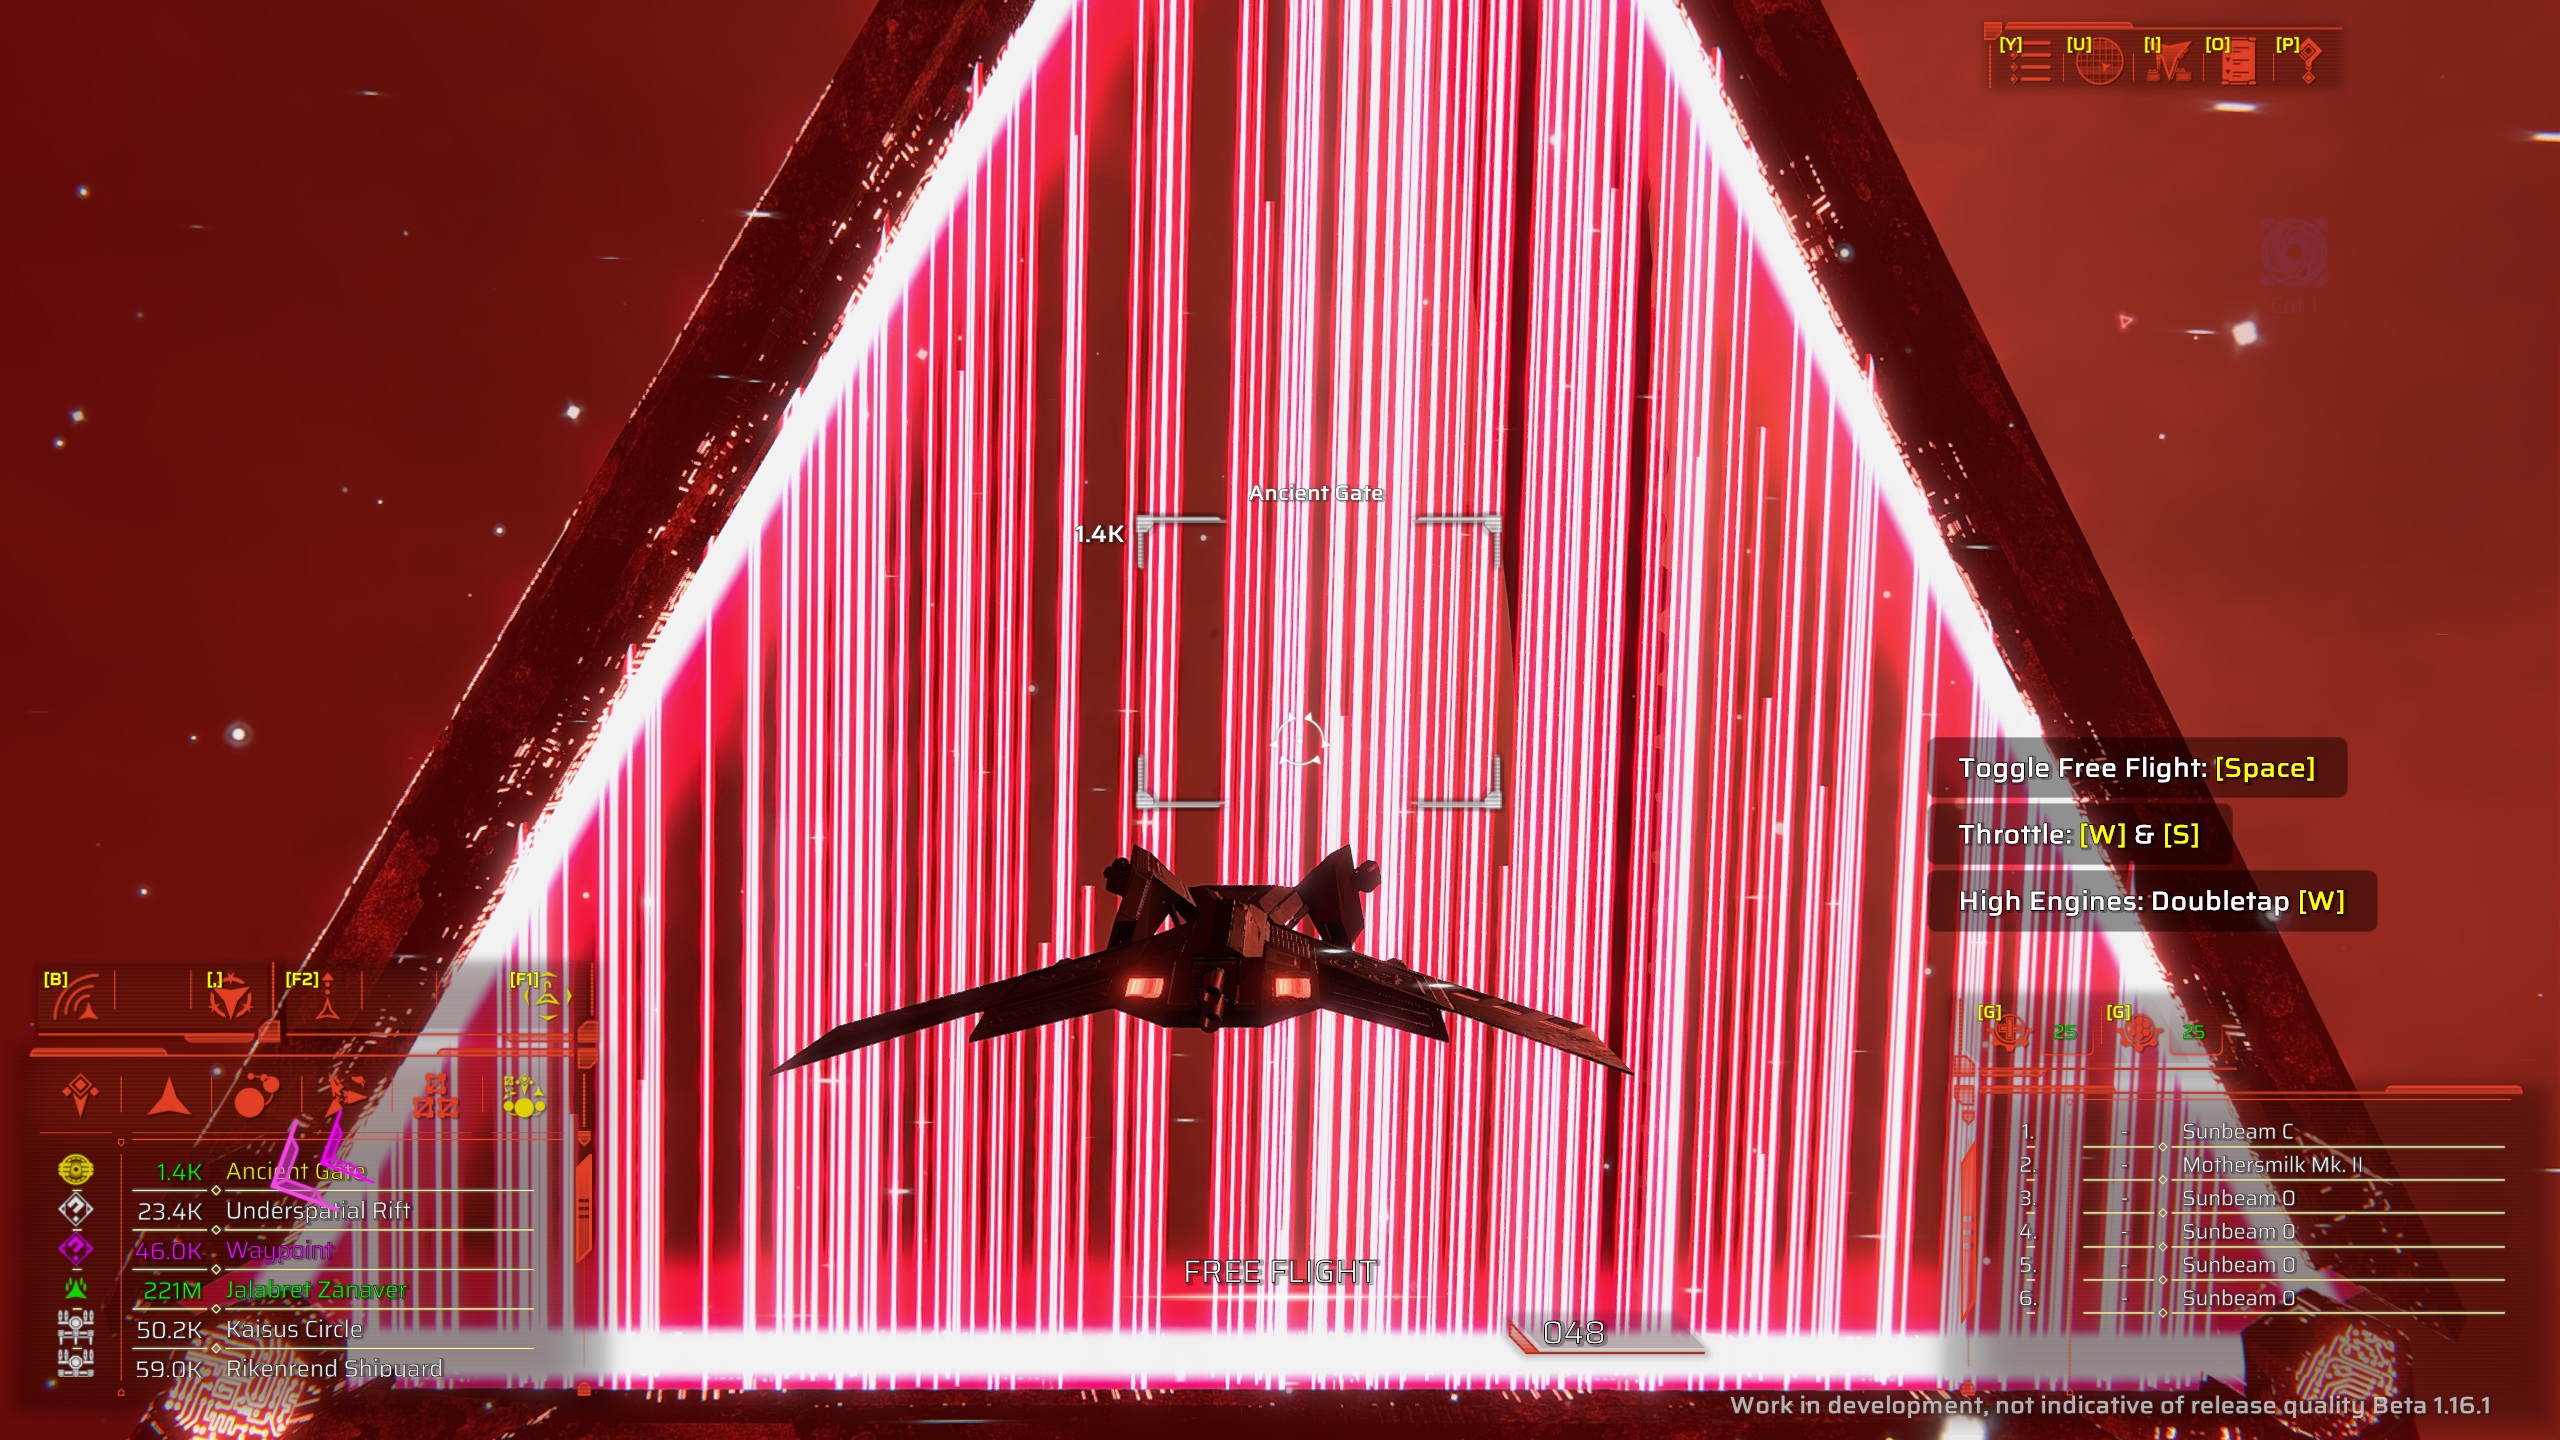 Starship approaching strange red laser gate